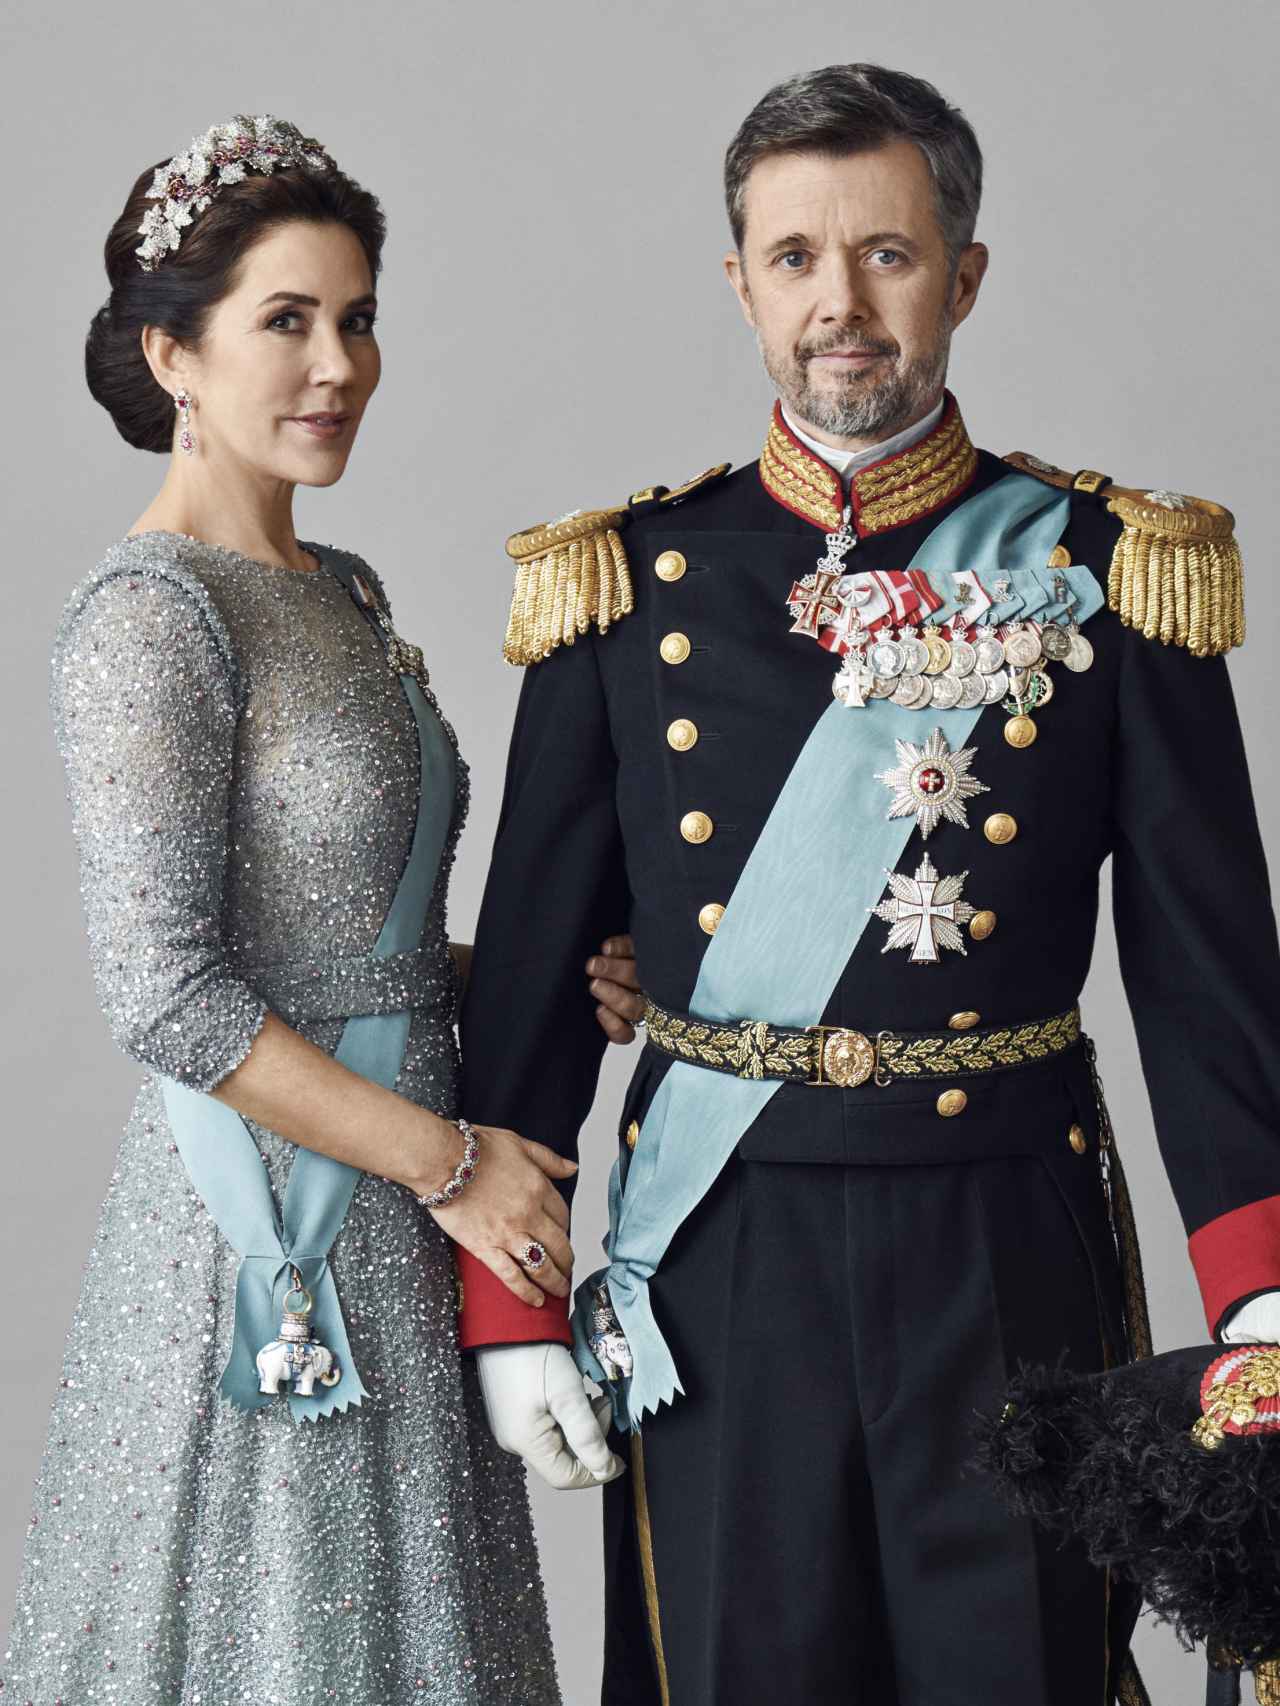 Retrato oficial de los inminentes reyes de Dinamarca, Federico y Mary.